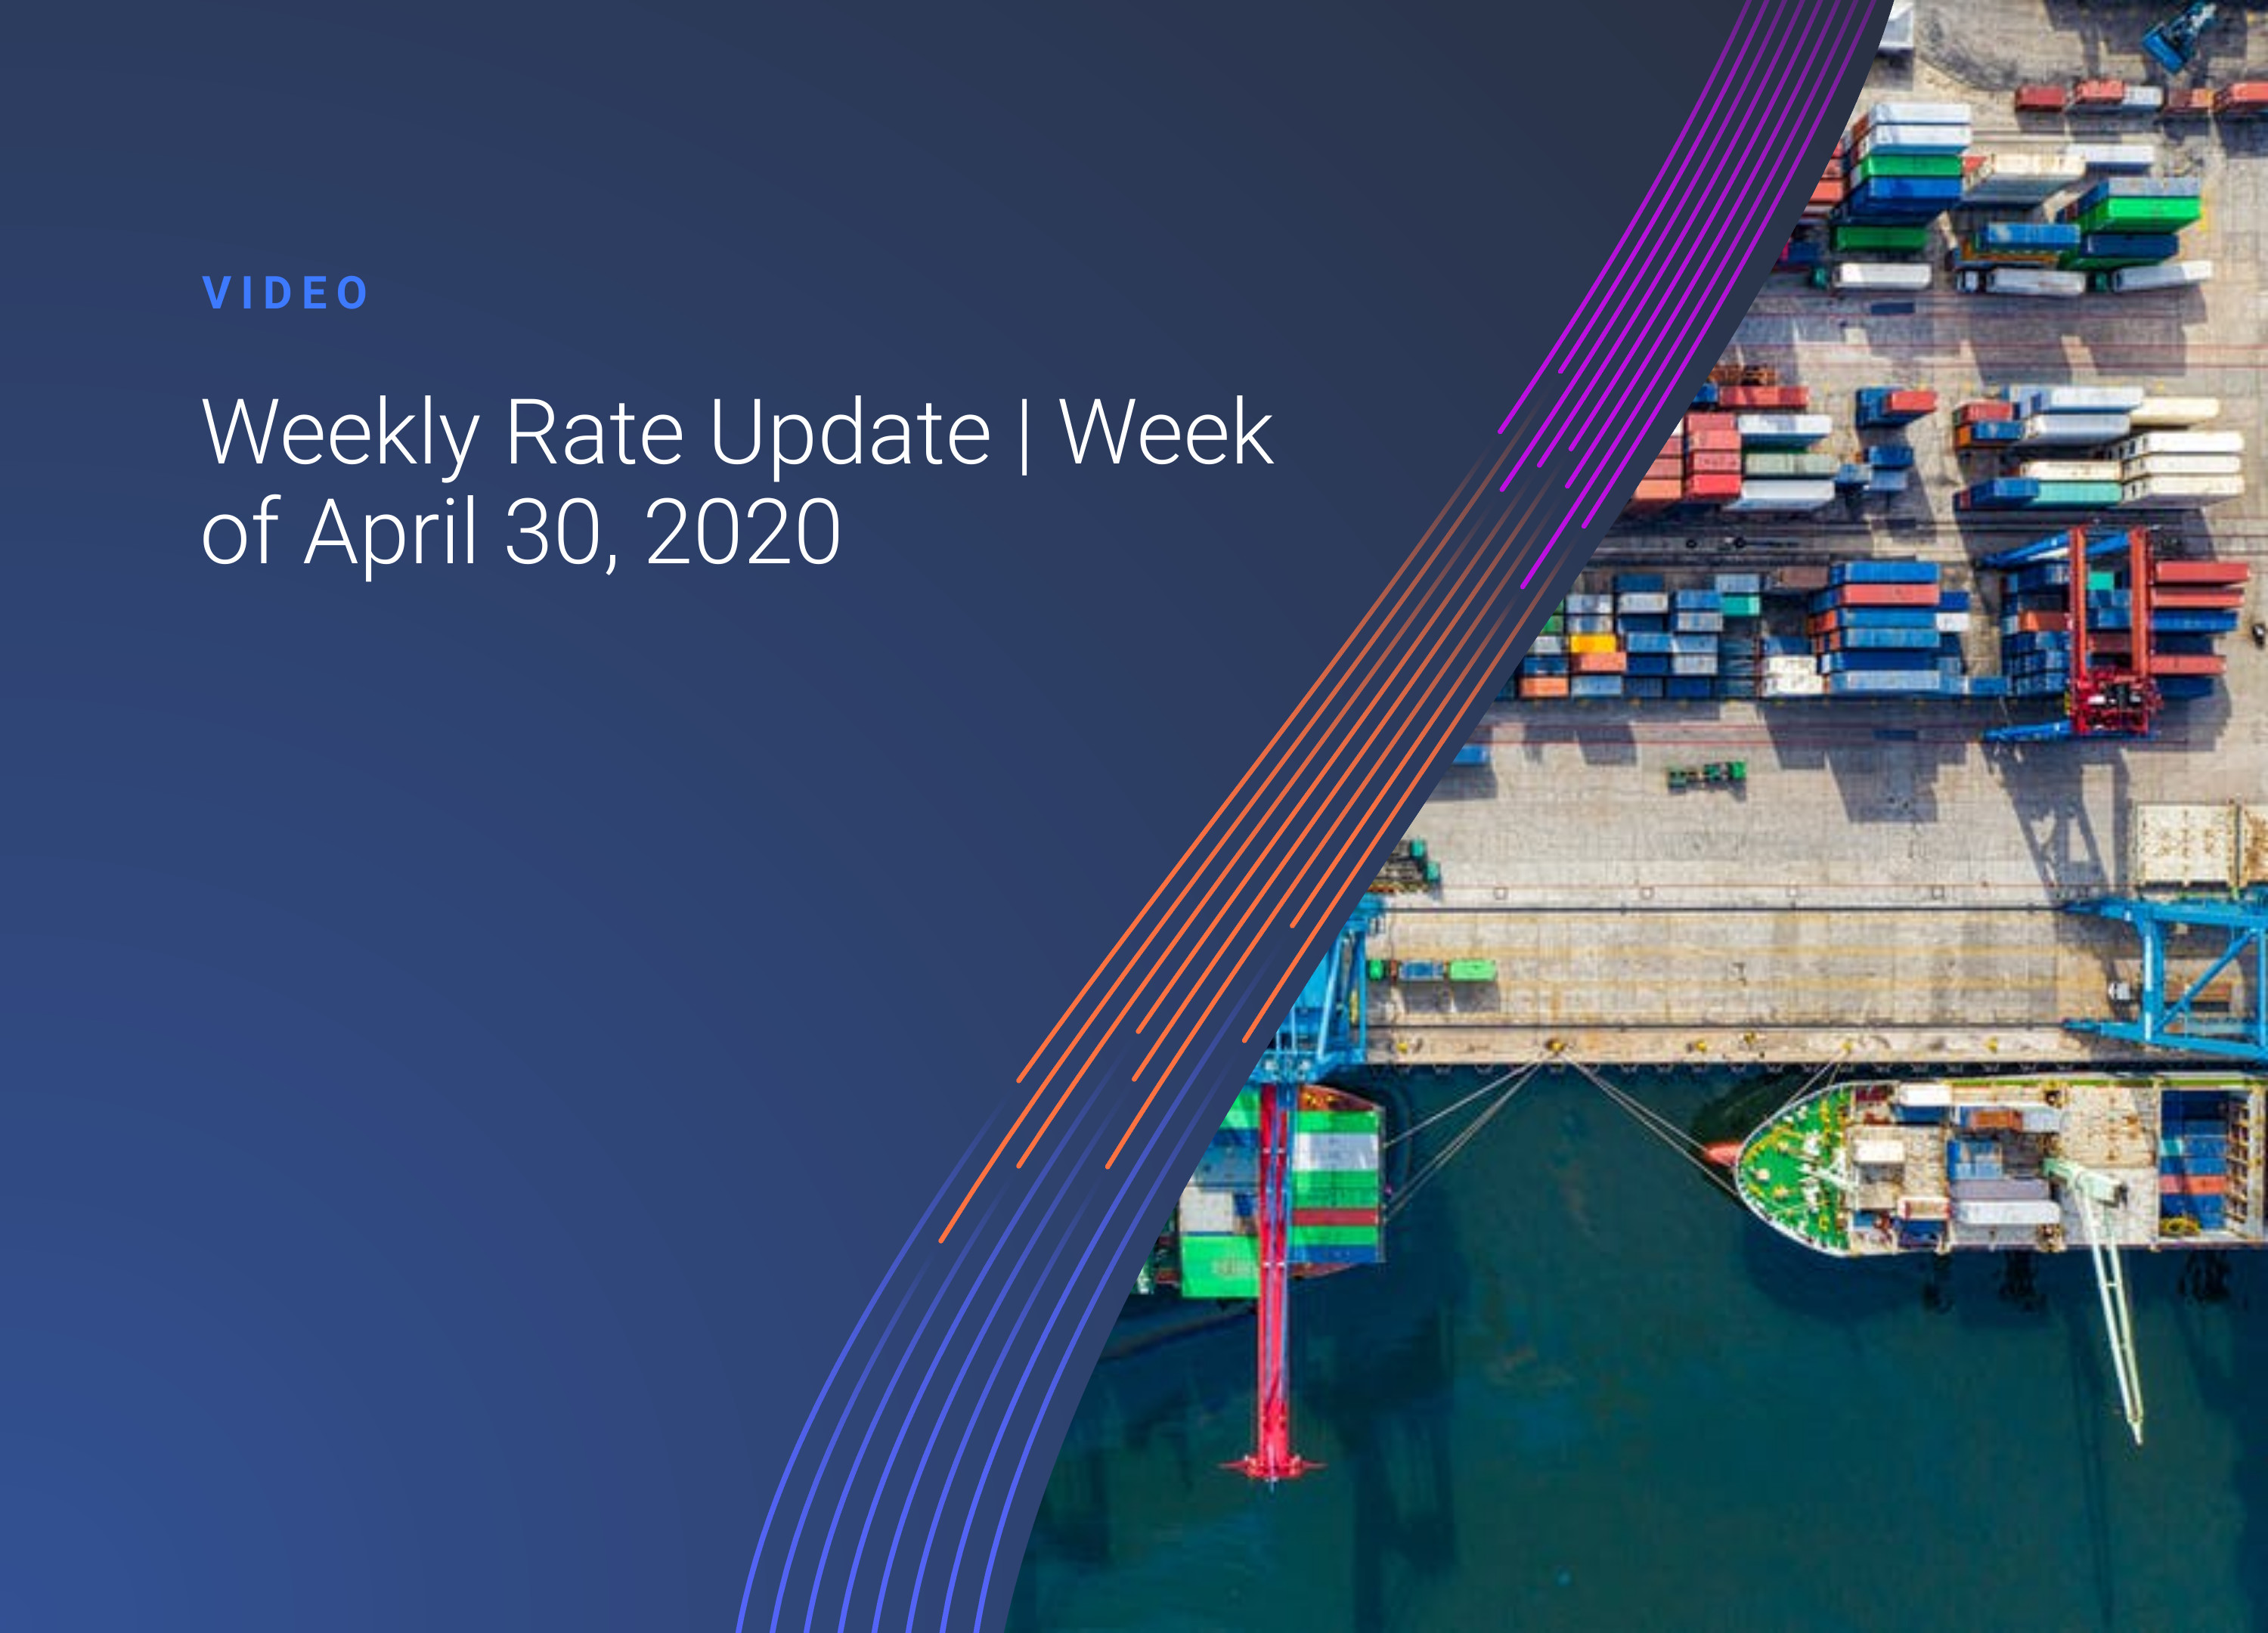 Weekly Rate Update: Week 18